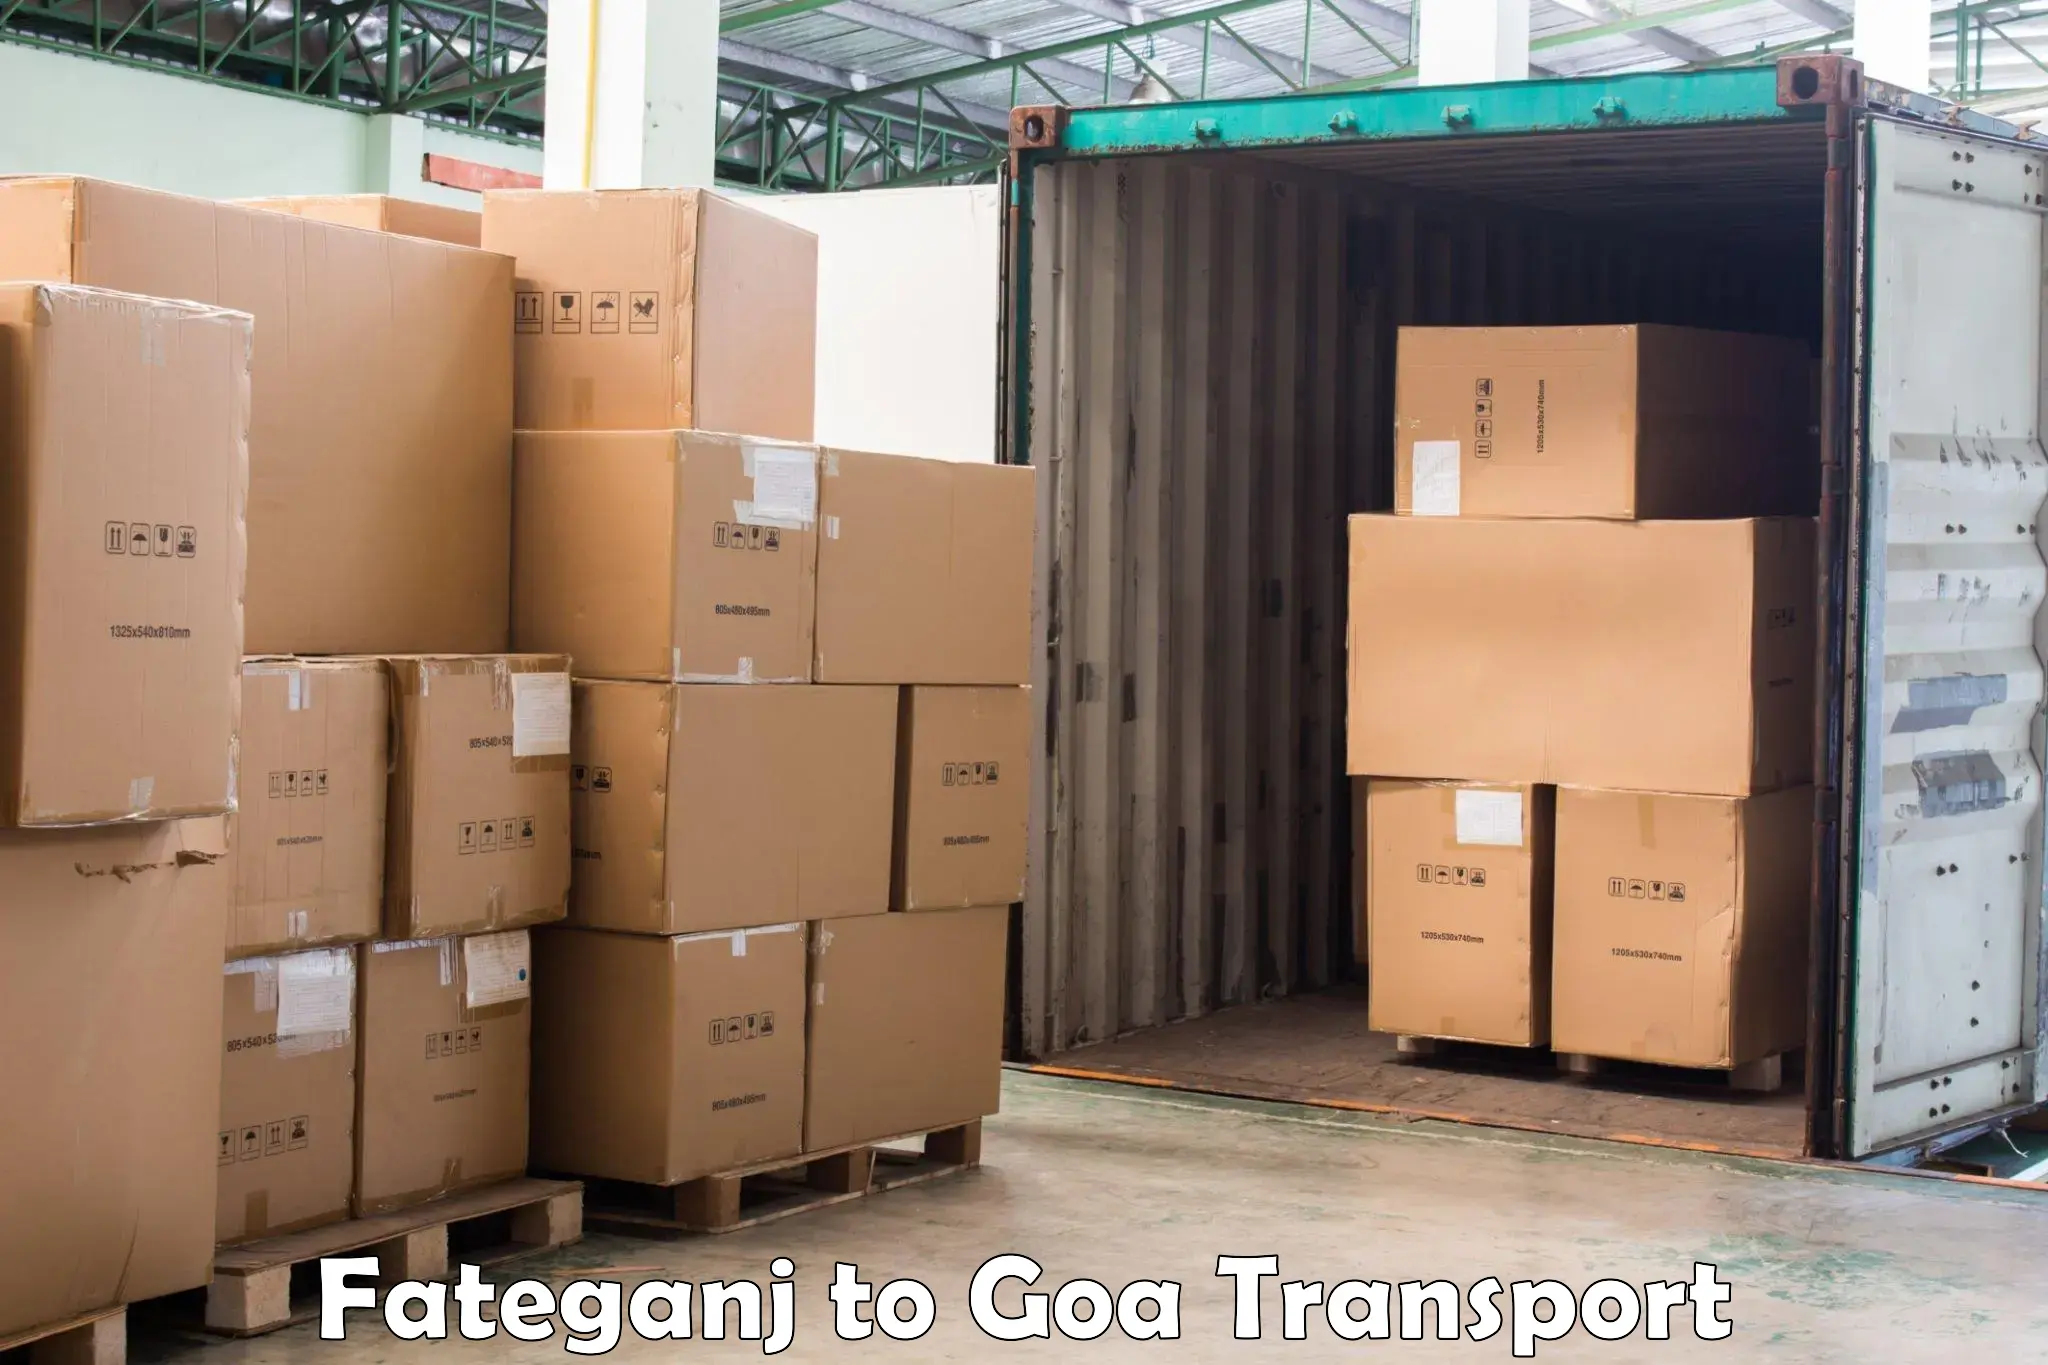 Express transport services Fateganj to Mormugao Port